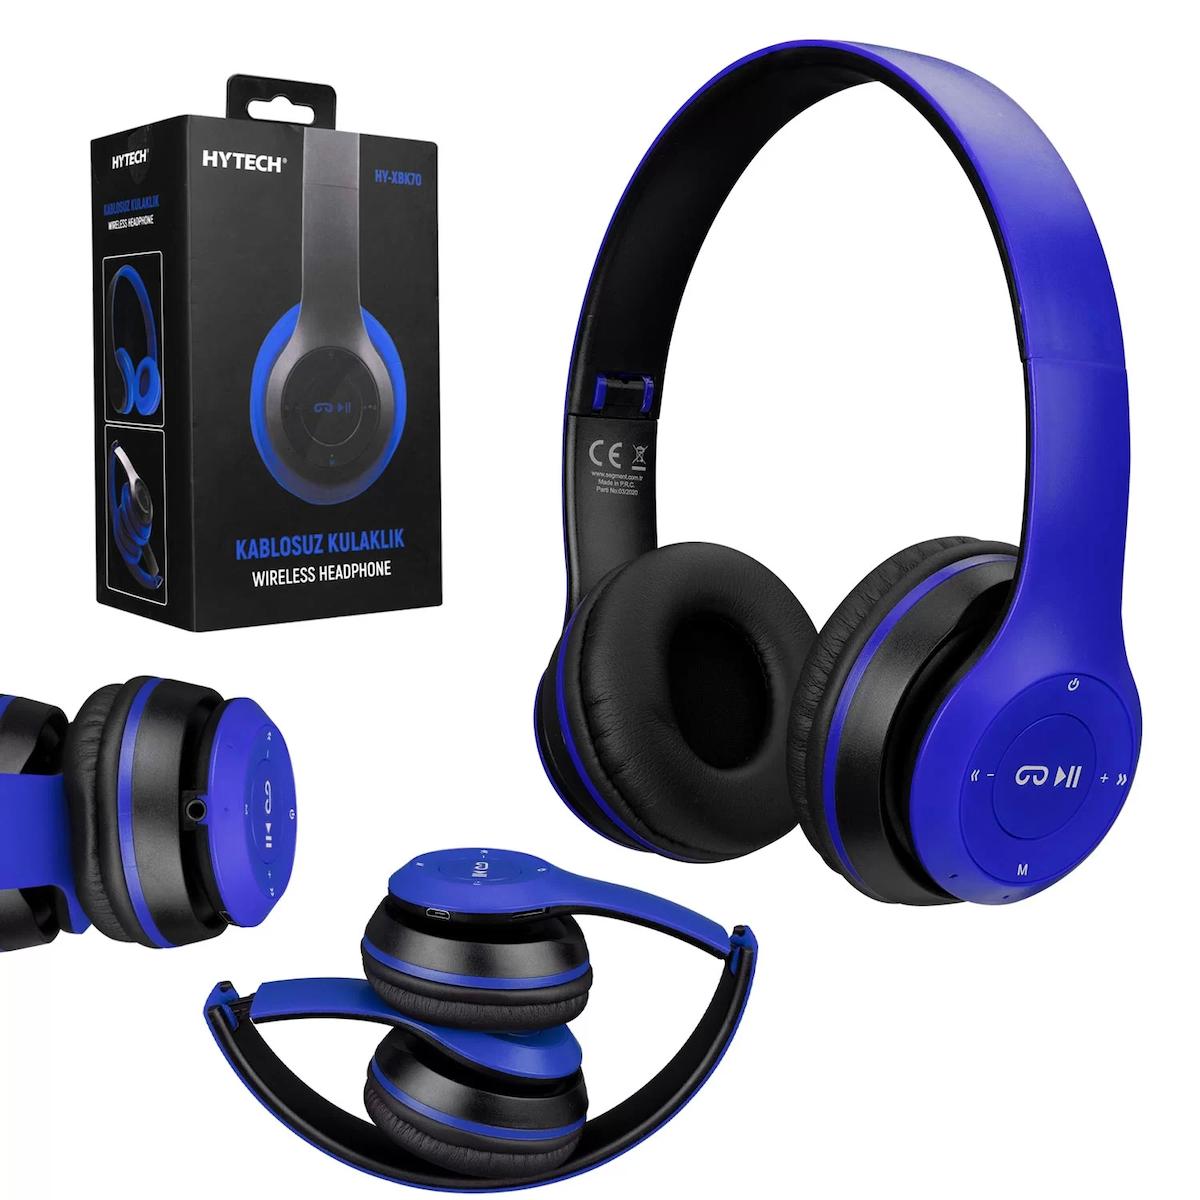 Hytech HY-XBK70 Kablosuz Kulak Üstü Bluetooth Kulaklık Mavi